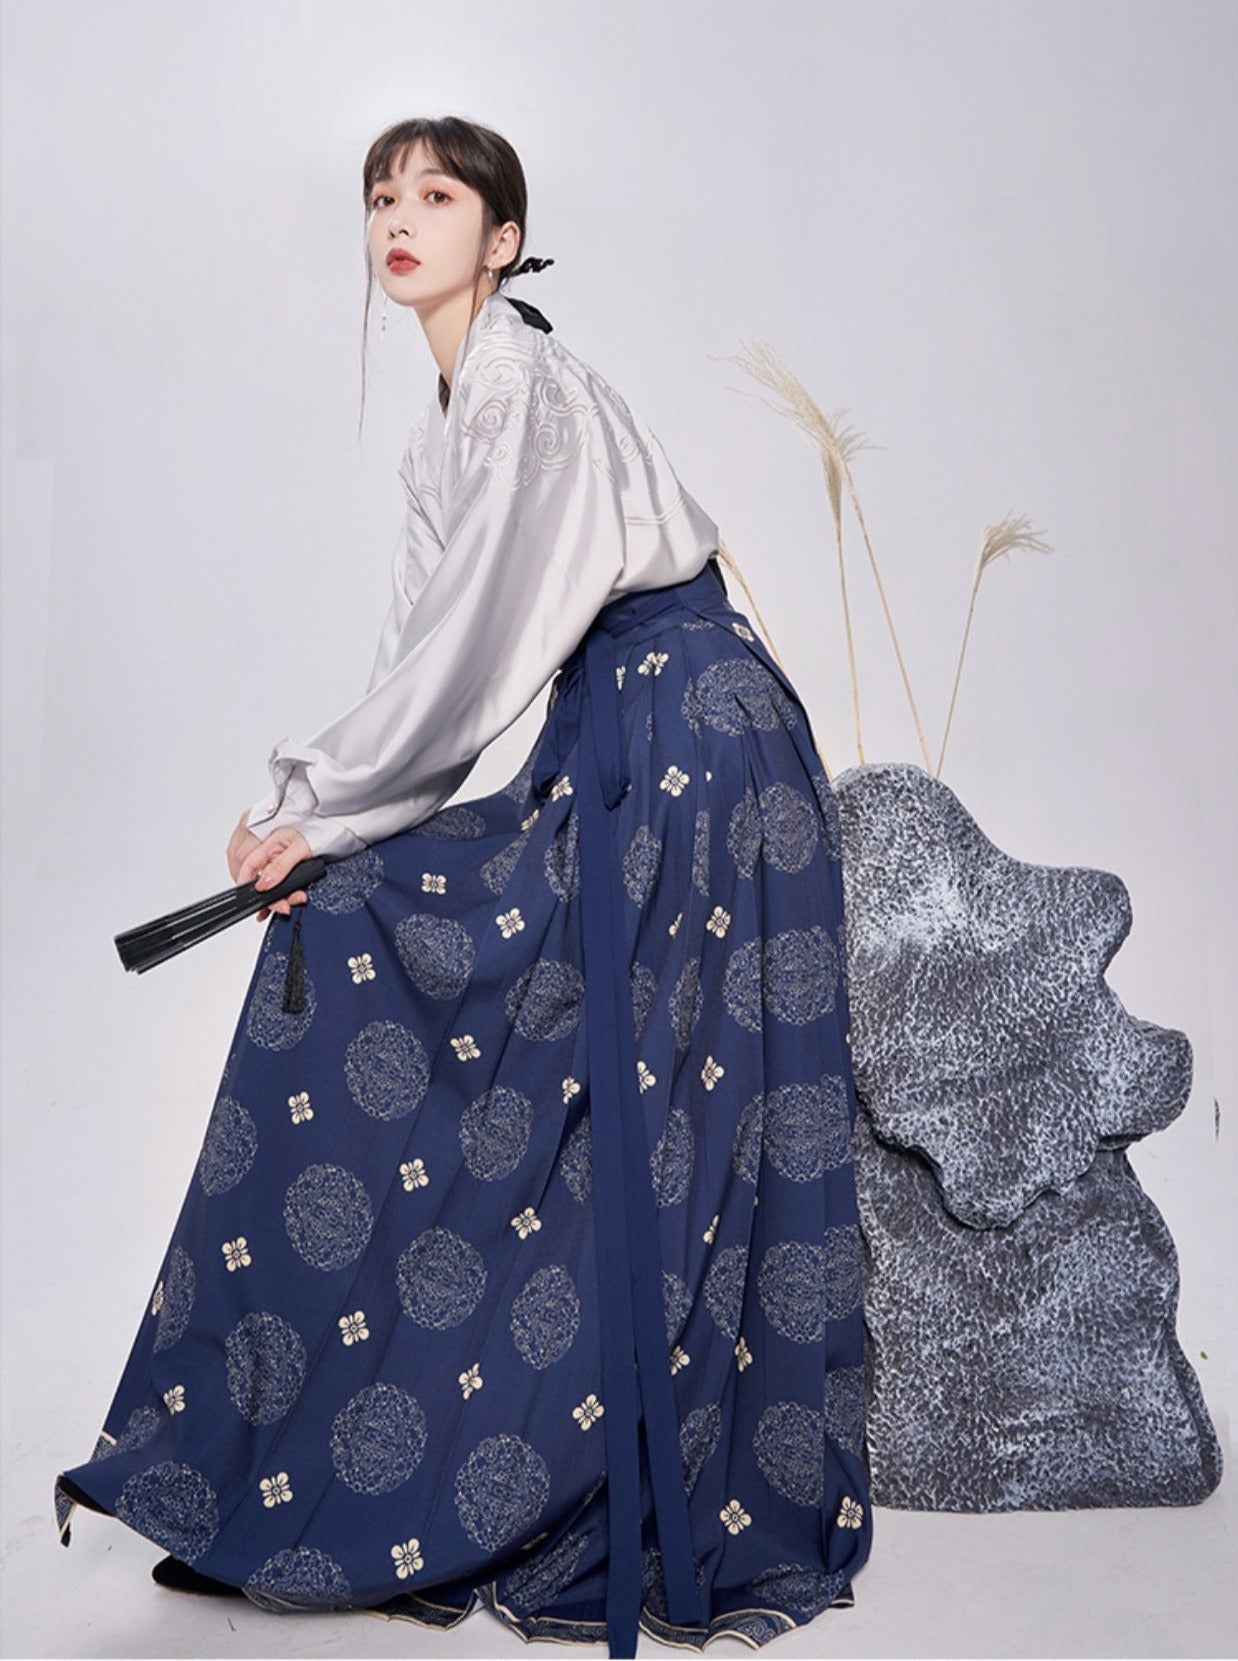 Top chinois à motifs japonais + jupe longue rétro